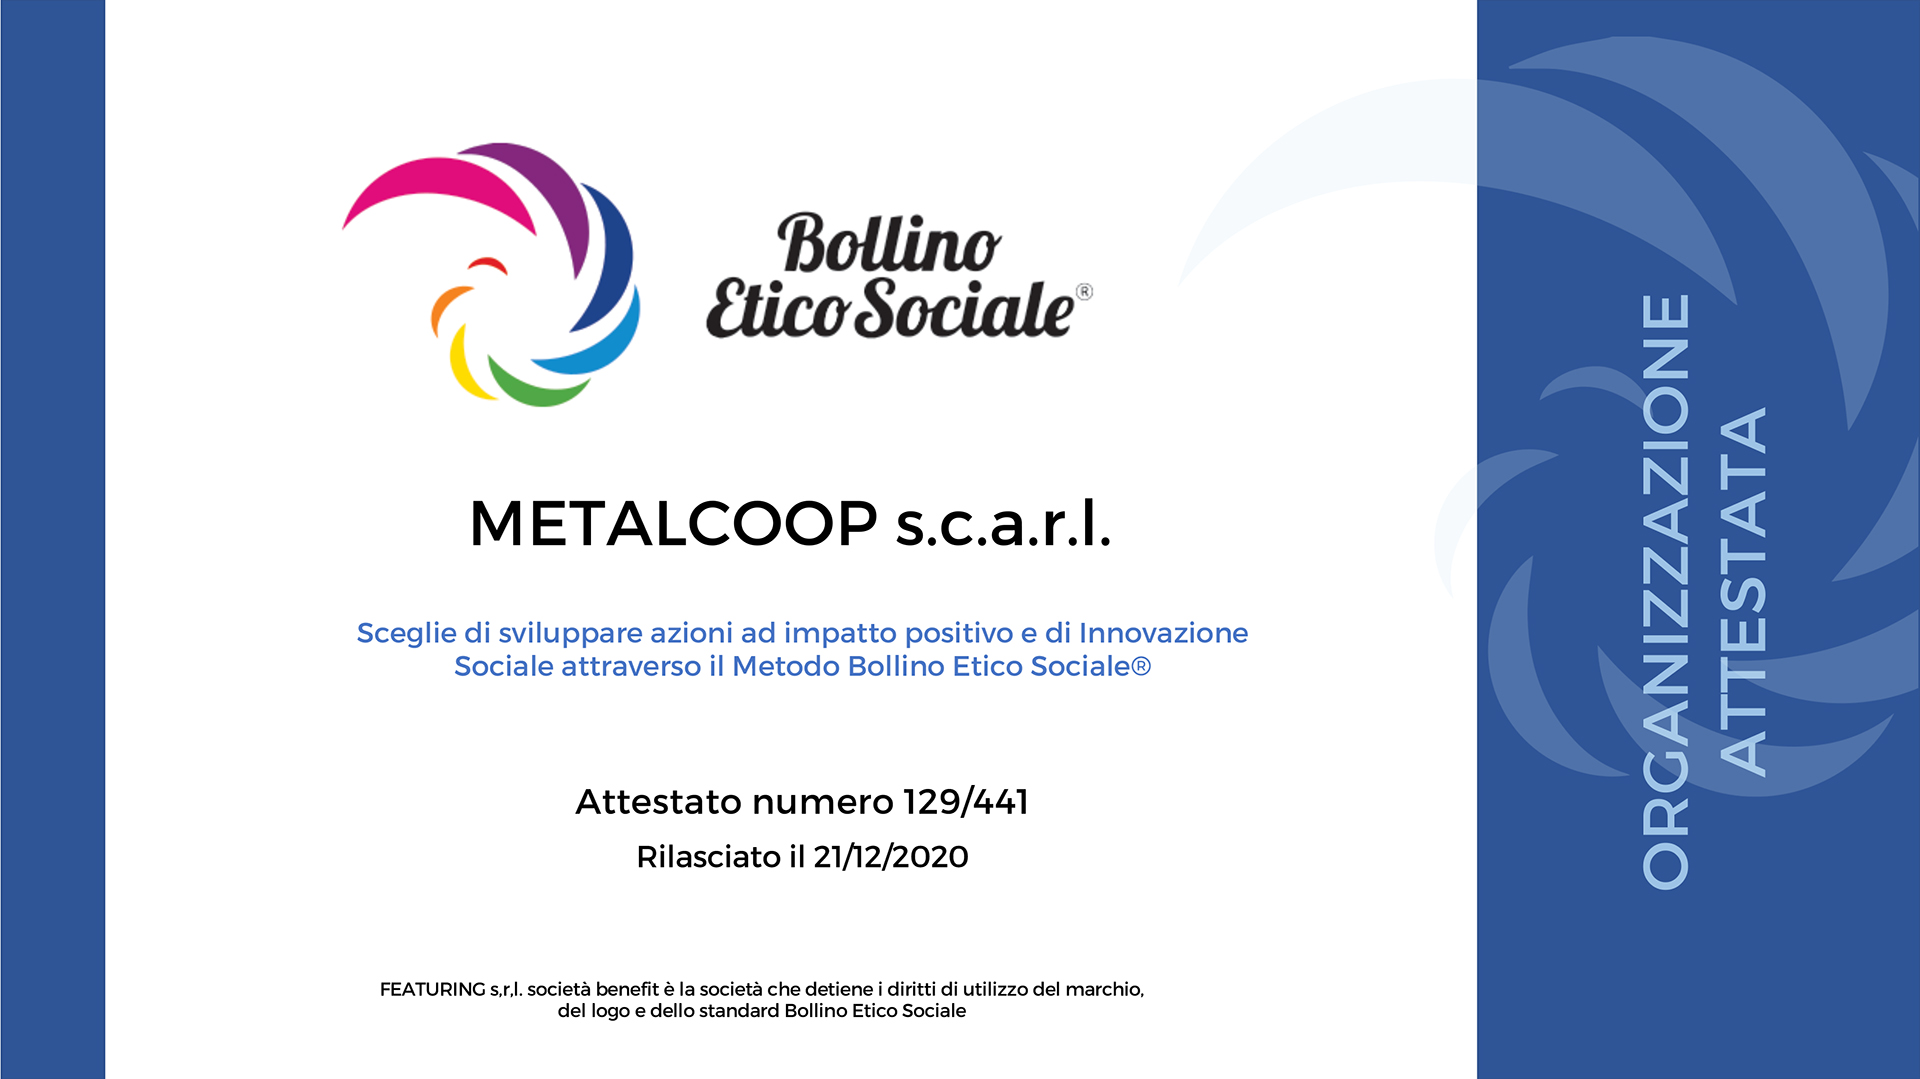 Metalcoop attestata secondo lo Standard BOLLINO ETICO SOCIALE®